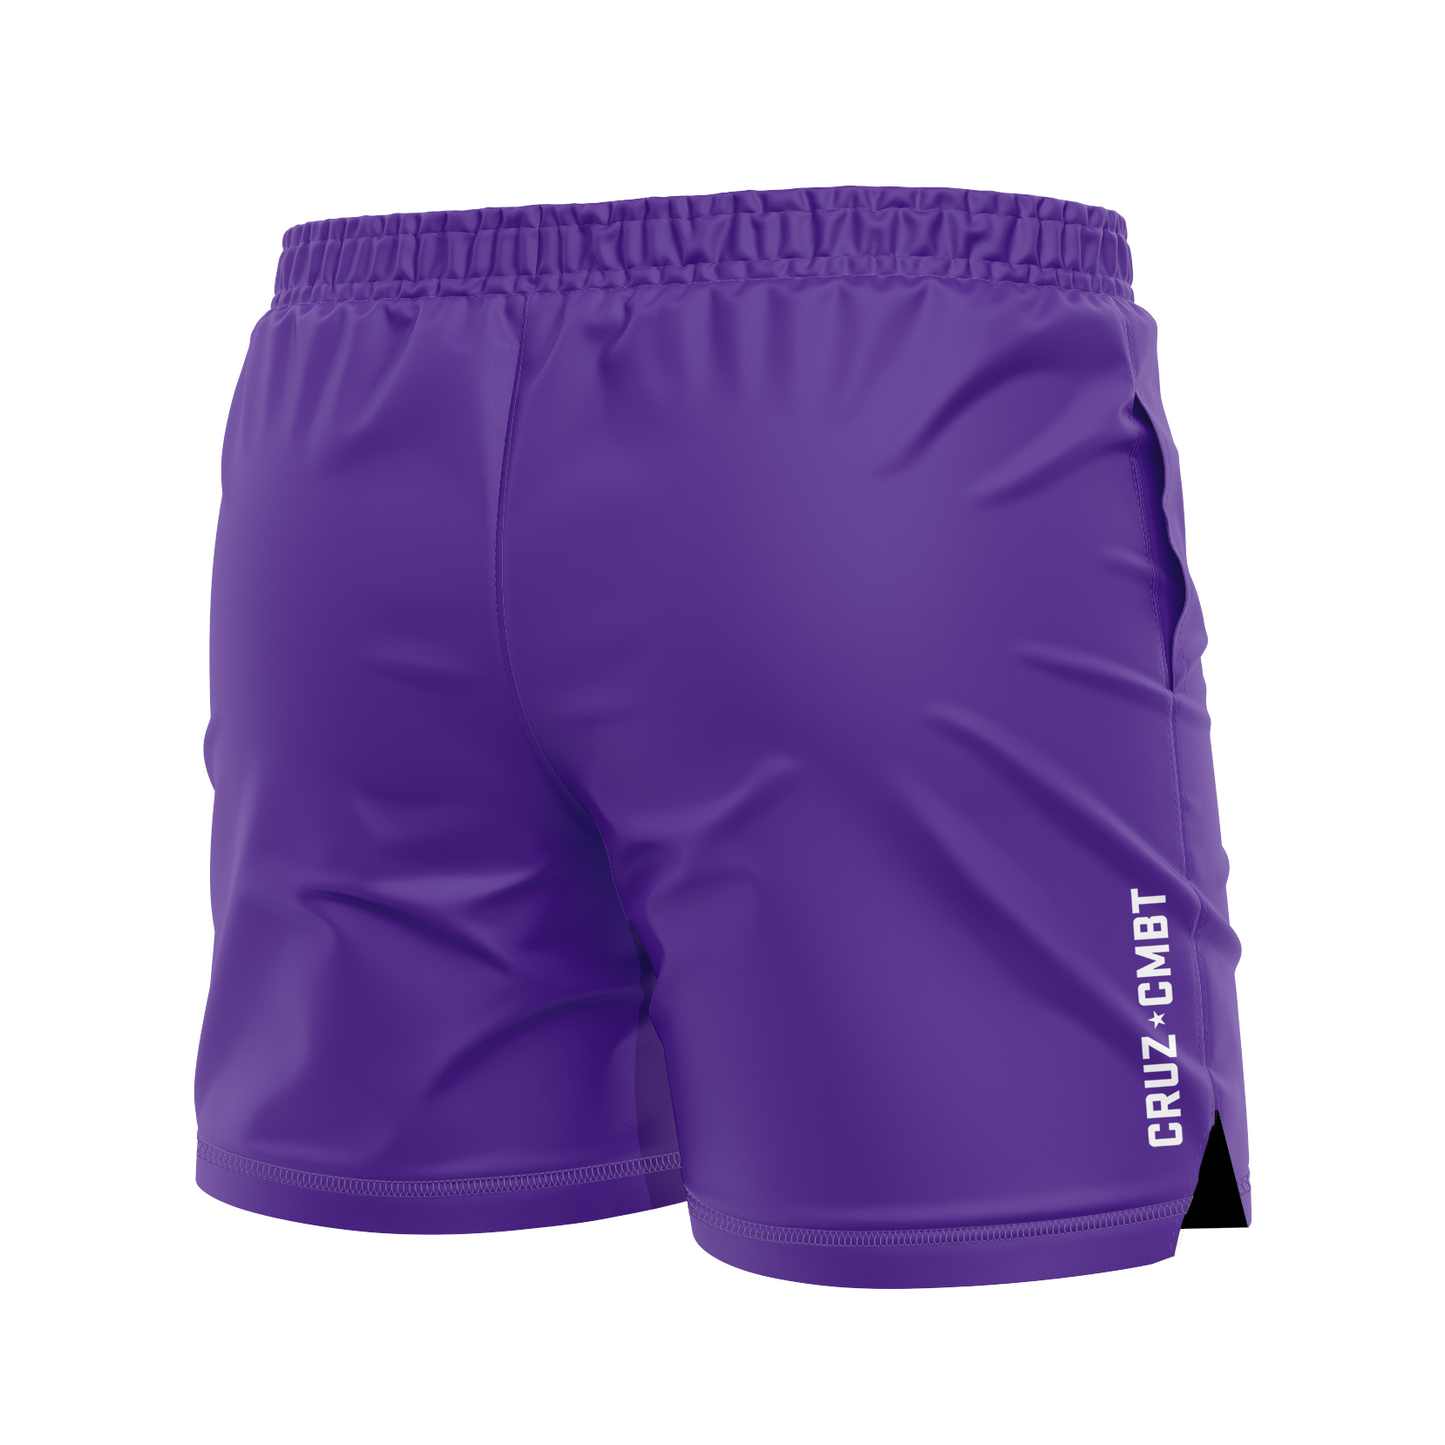 Base Collection men's FC shorts, purple